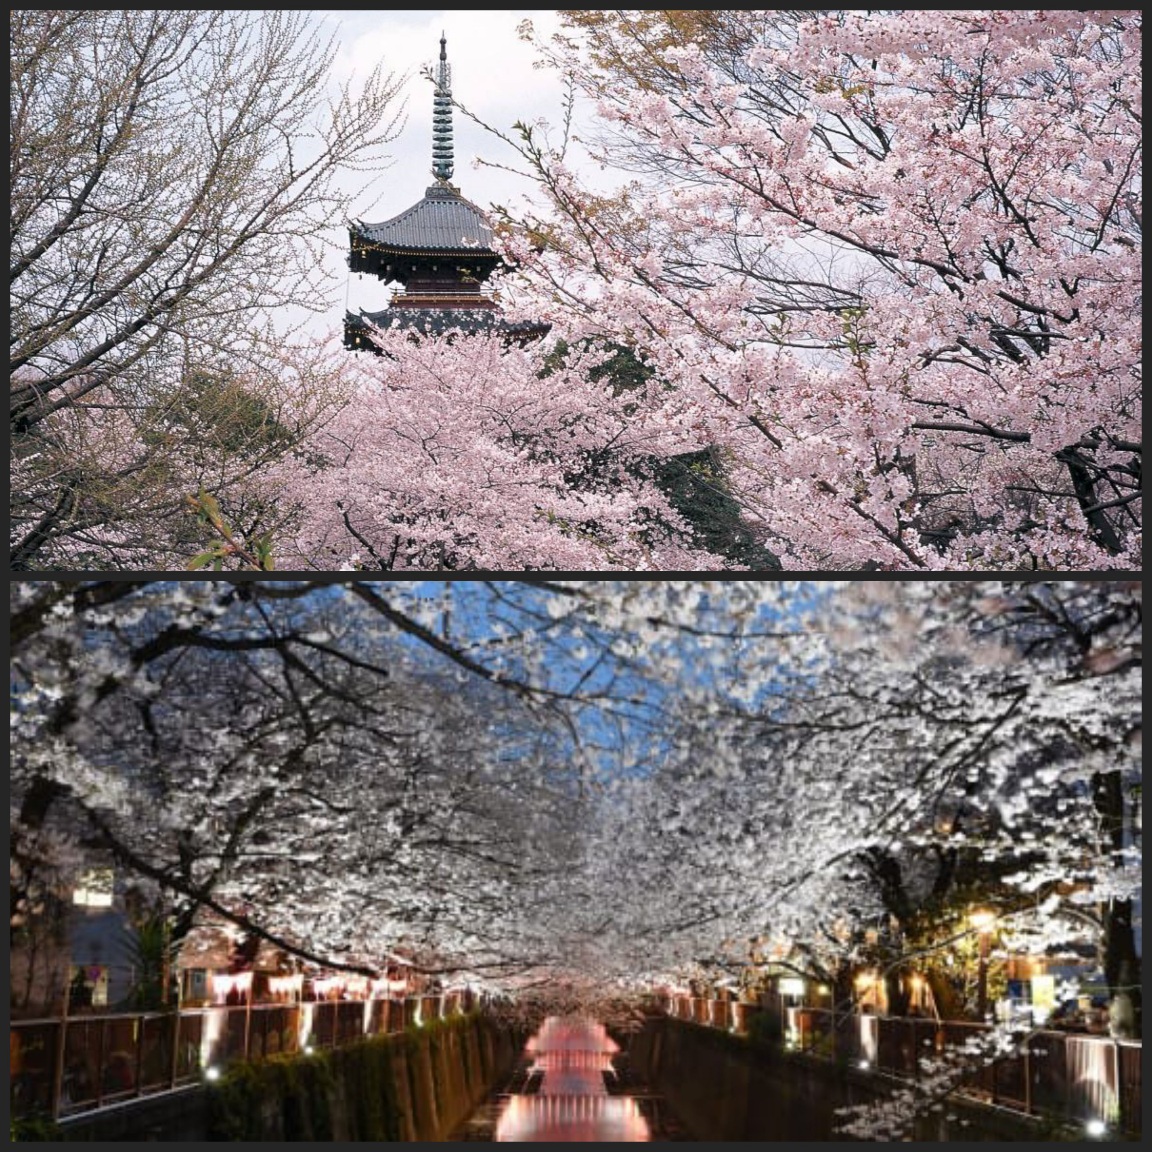 우에노 공원의 벚꽃 풍경&#44; 일본 전통 건축물과 벚꽃&#44; 벚꽃 야경을 볼 수 있다.